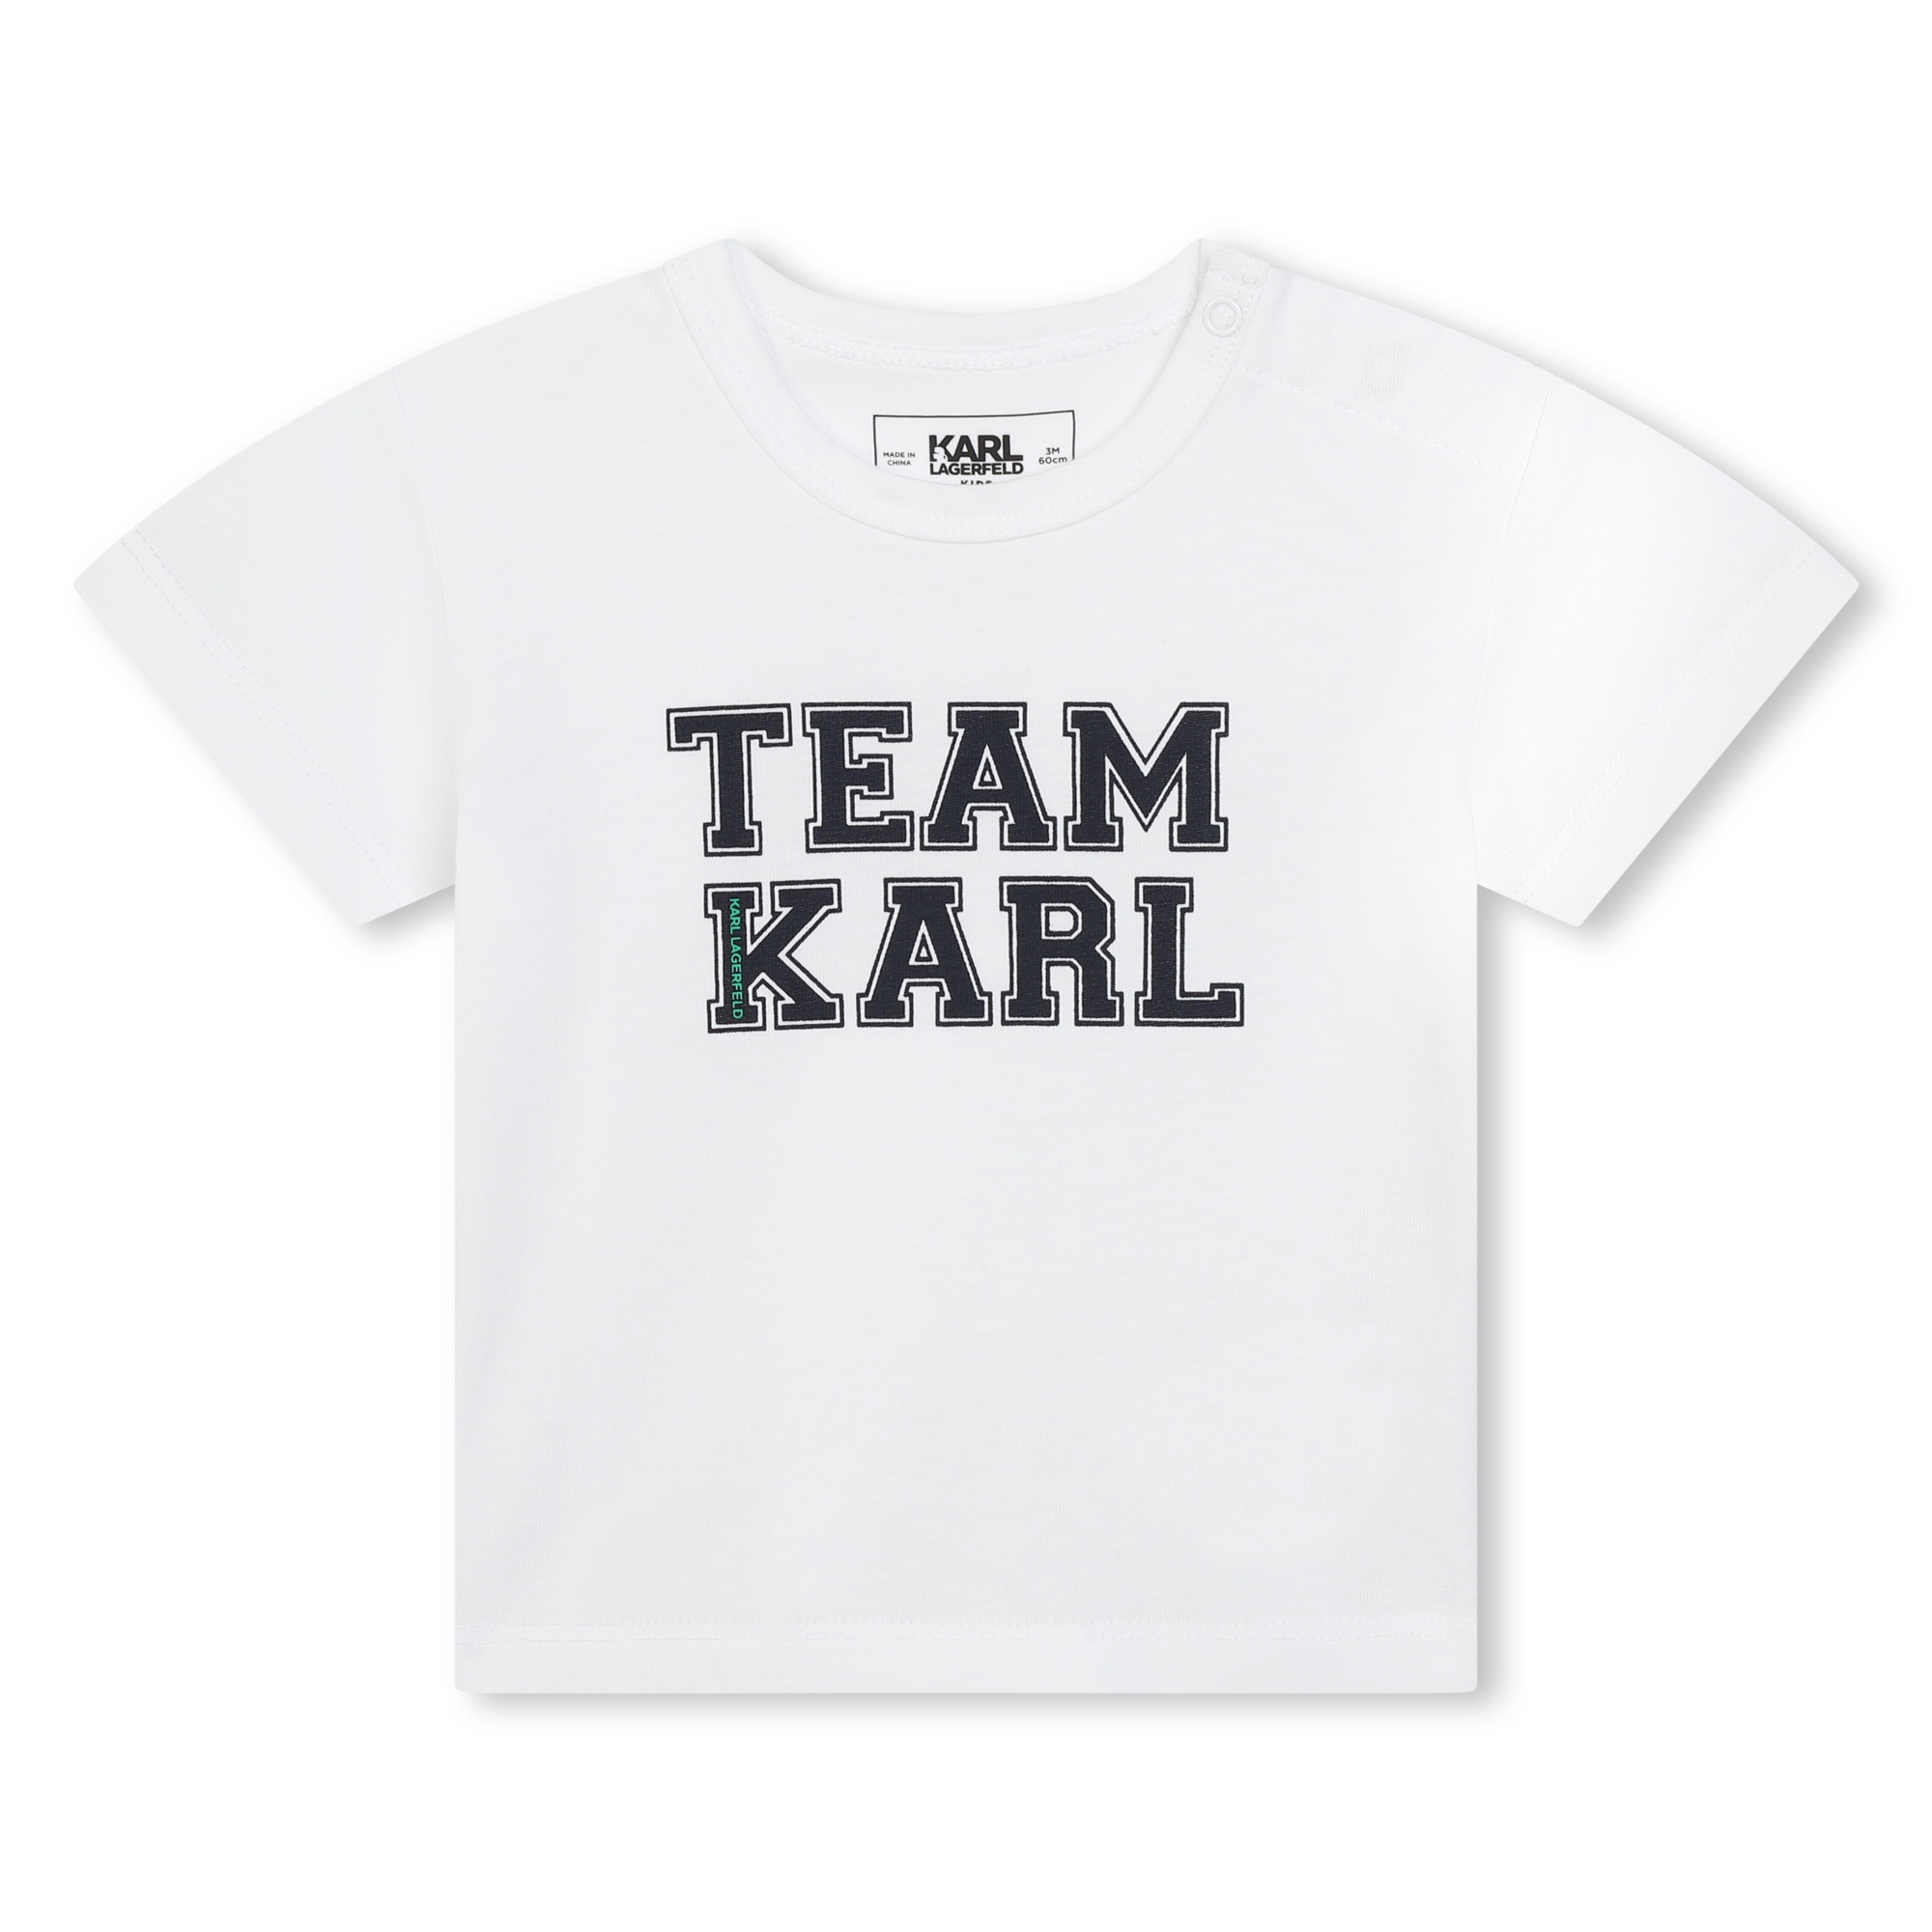 Short de bain et t-shirt KARL LAGERFELD KIDS pour GARCON